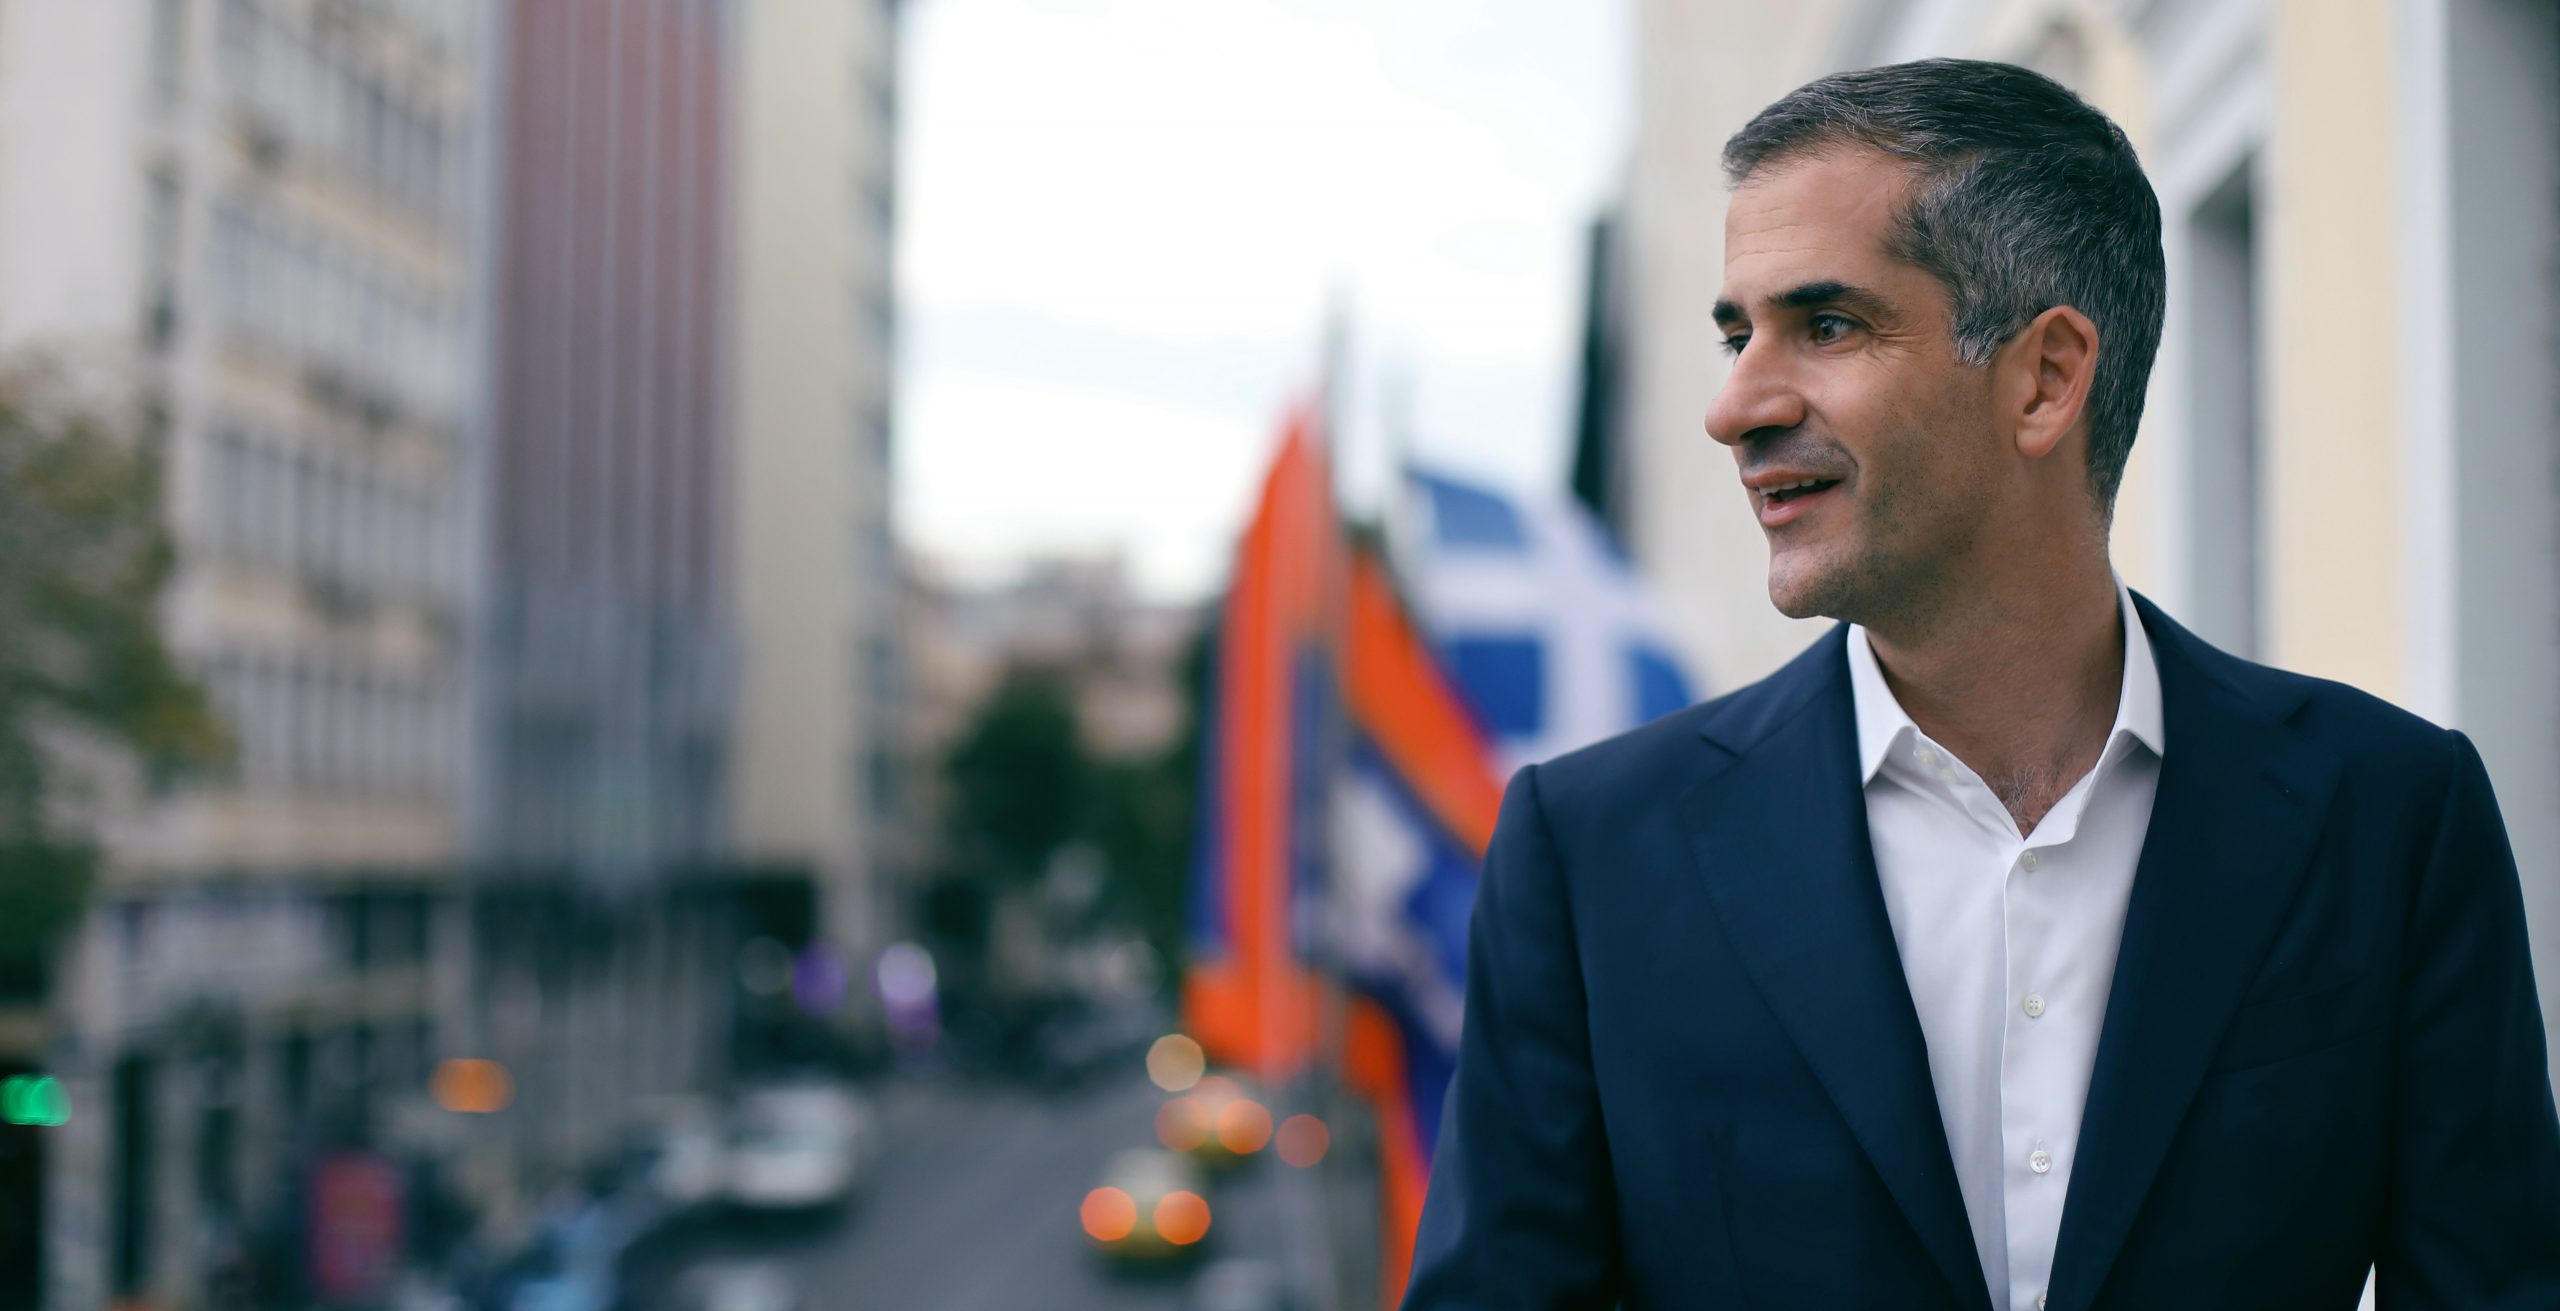 Μπακογιάννης «Αθήνα Ψηλά»: Το ψηφοδέλτιο για τον Δήμο Αθηναίων – Τα «γνωστά» ονόματα